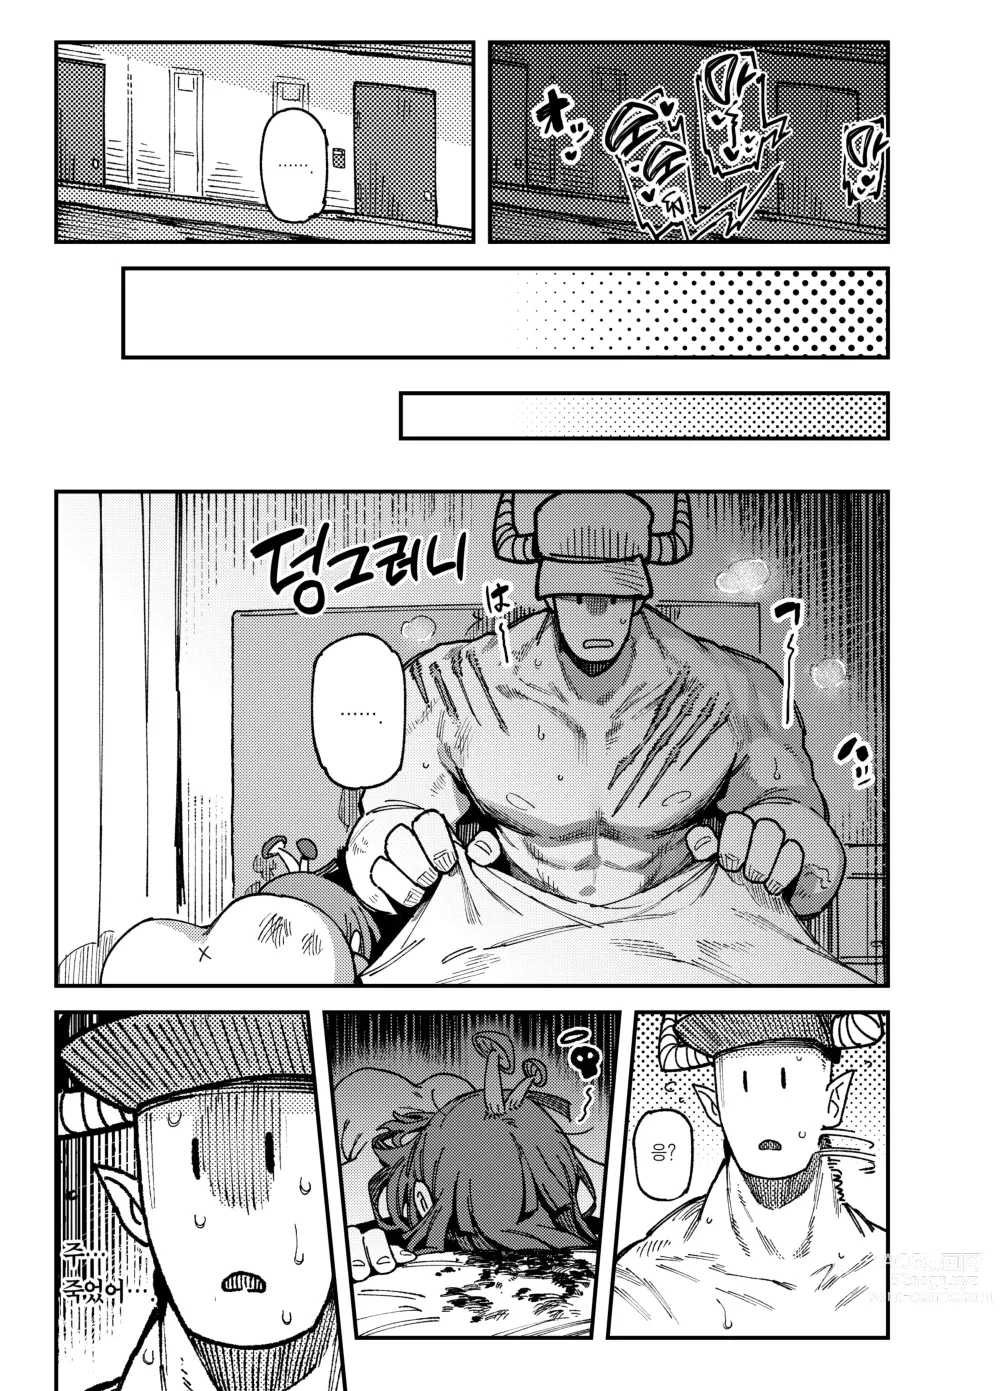 Page 49 of doujinshi 집이 너무 습해서 자란 환각을 유발하는 버섯을 잘못 먹고 발정이 나서 생긴 일들